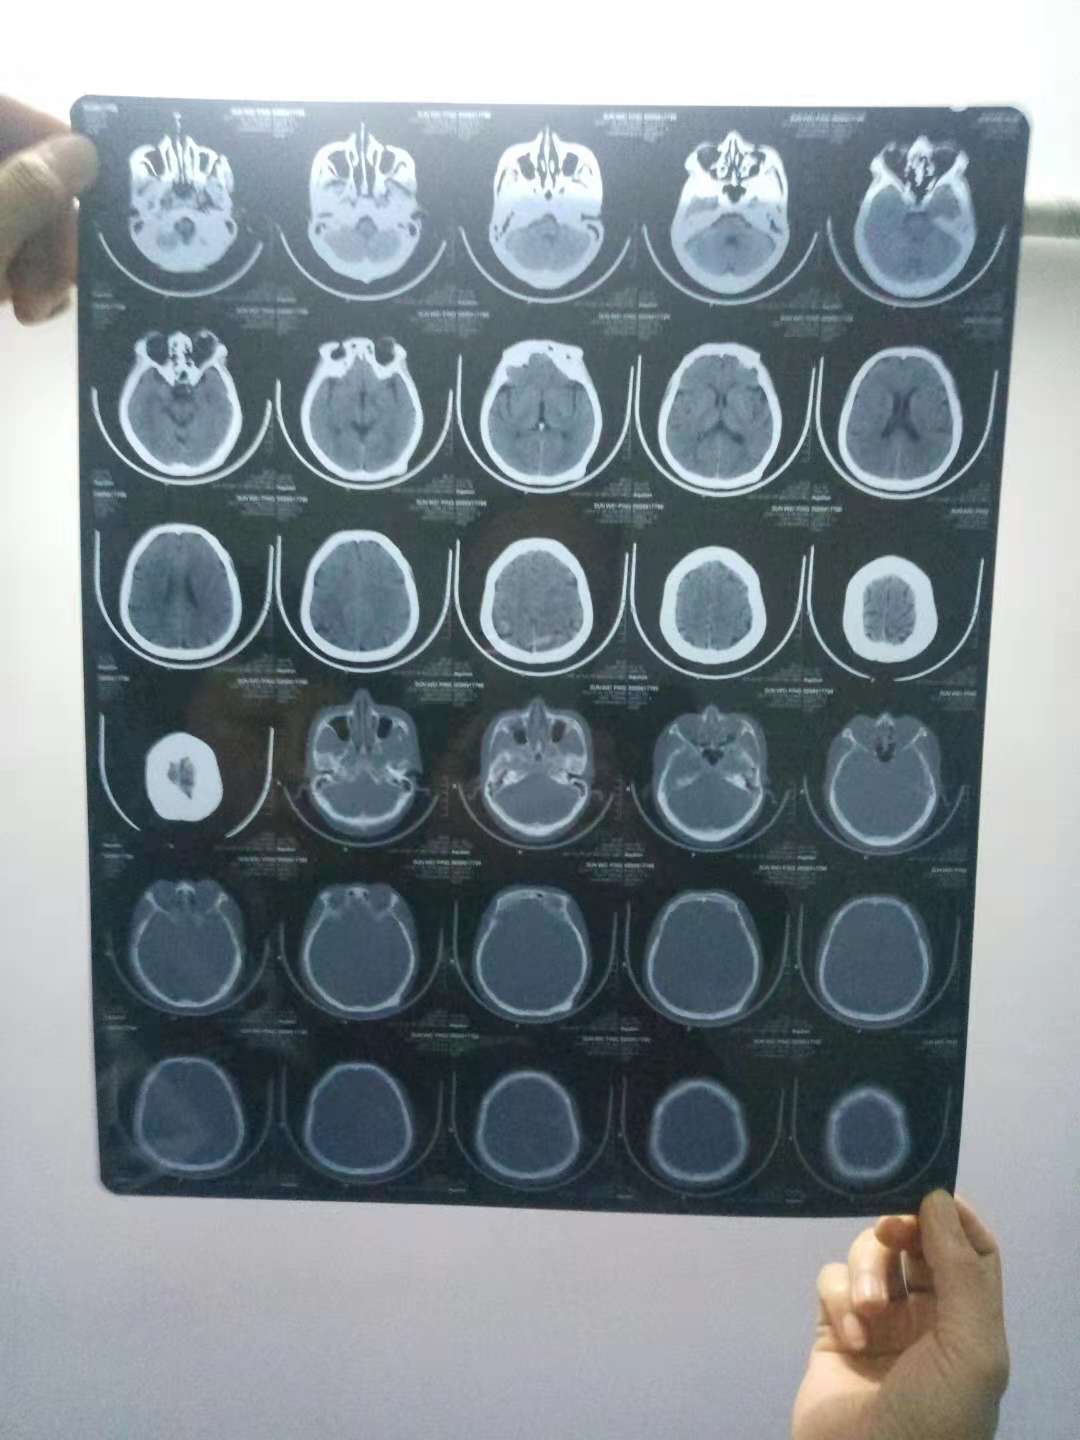 颅骨骨瘤早期症状照片图片